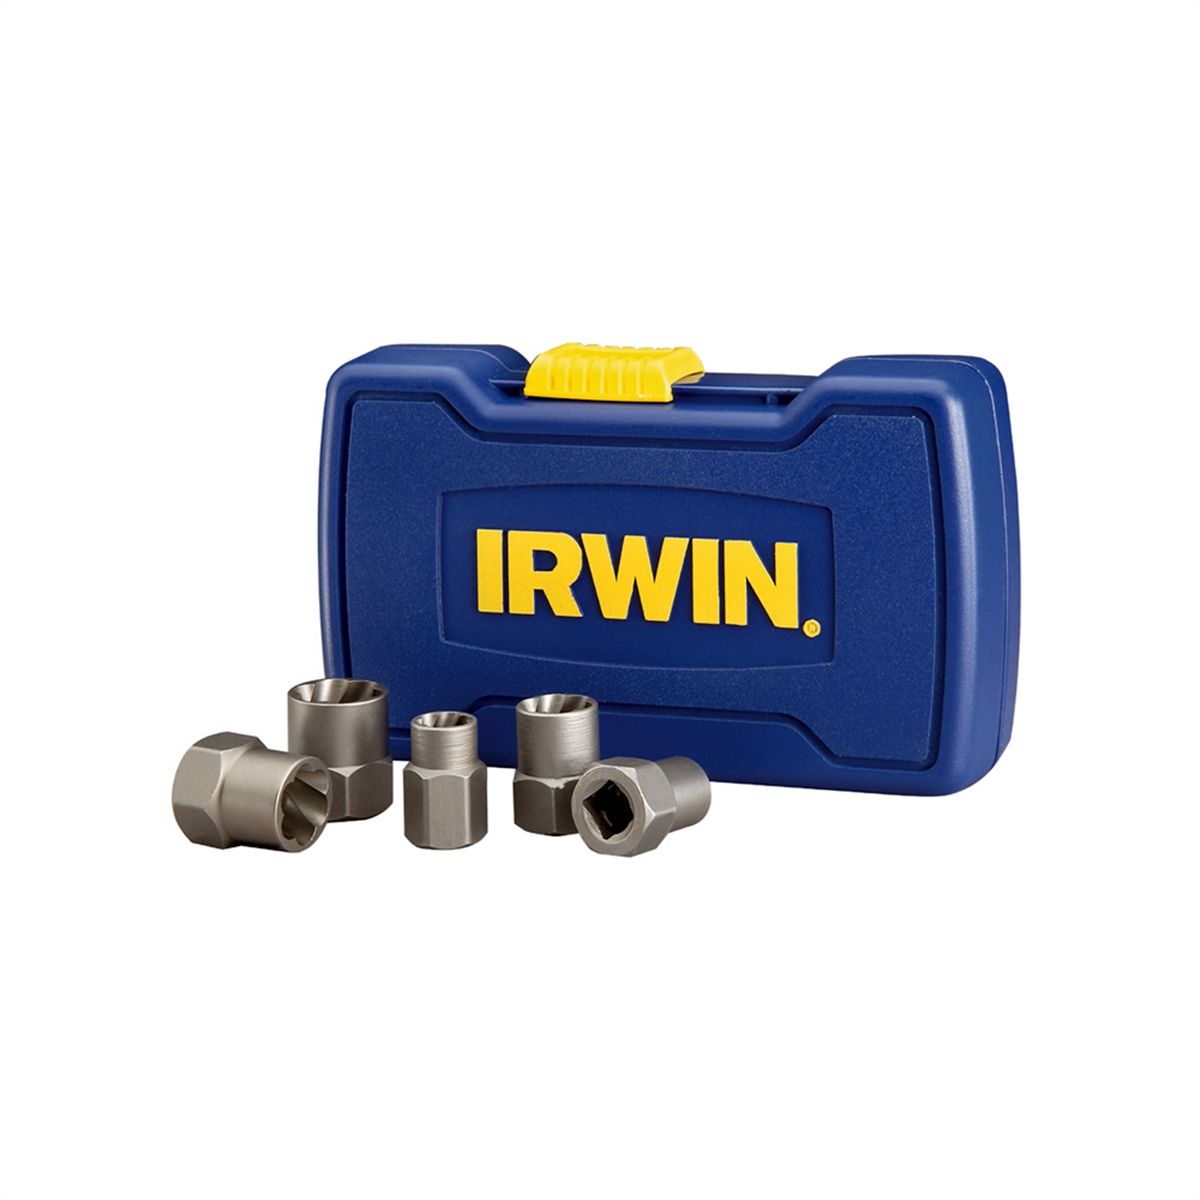 irwin screw extractor